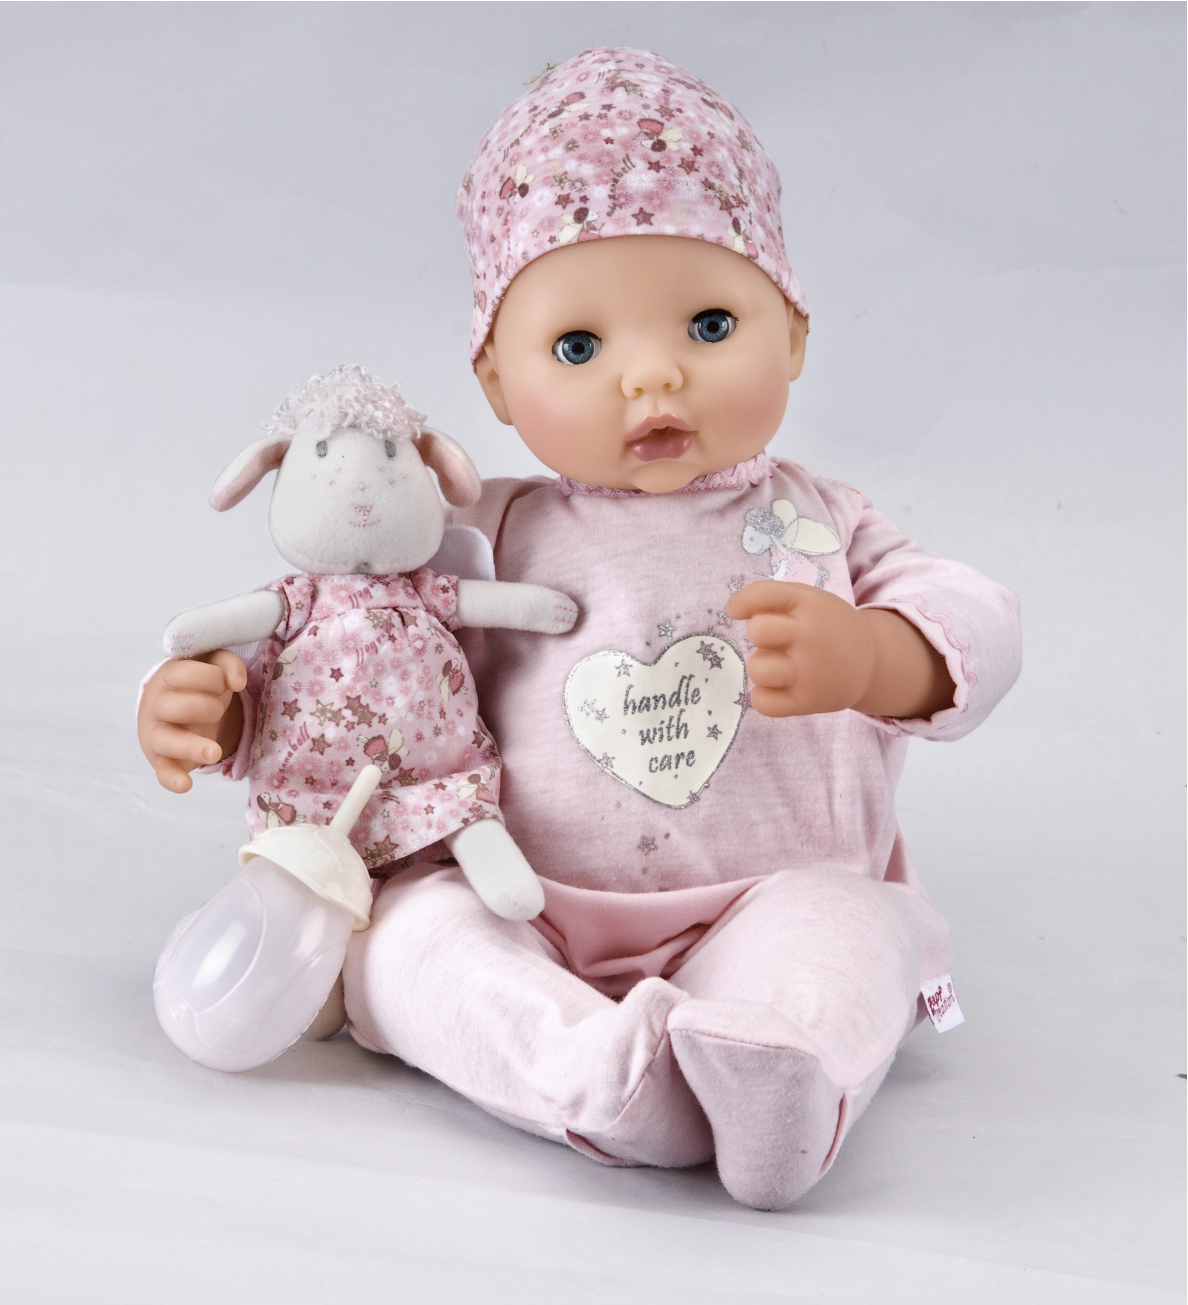 Buy argos baby dolls